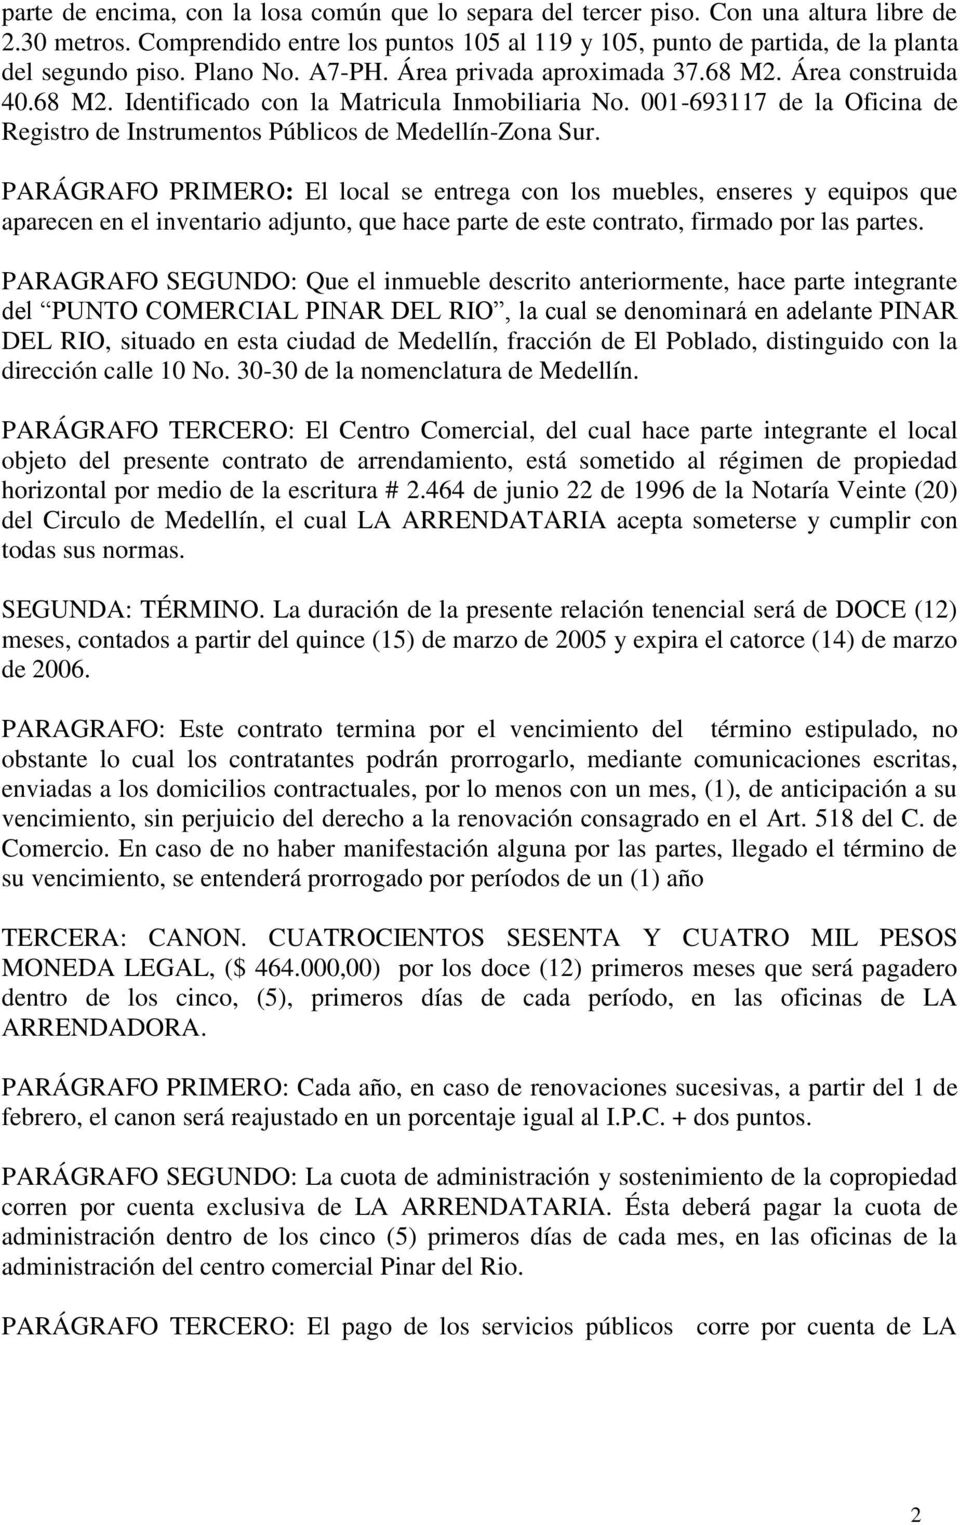 001-693117 de la Oficina de Registro de Instrumentos Públicos de Medellín-Zona Sur.